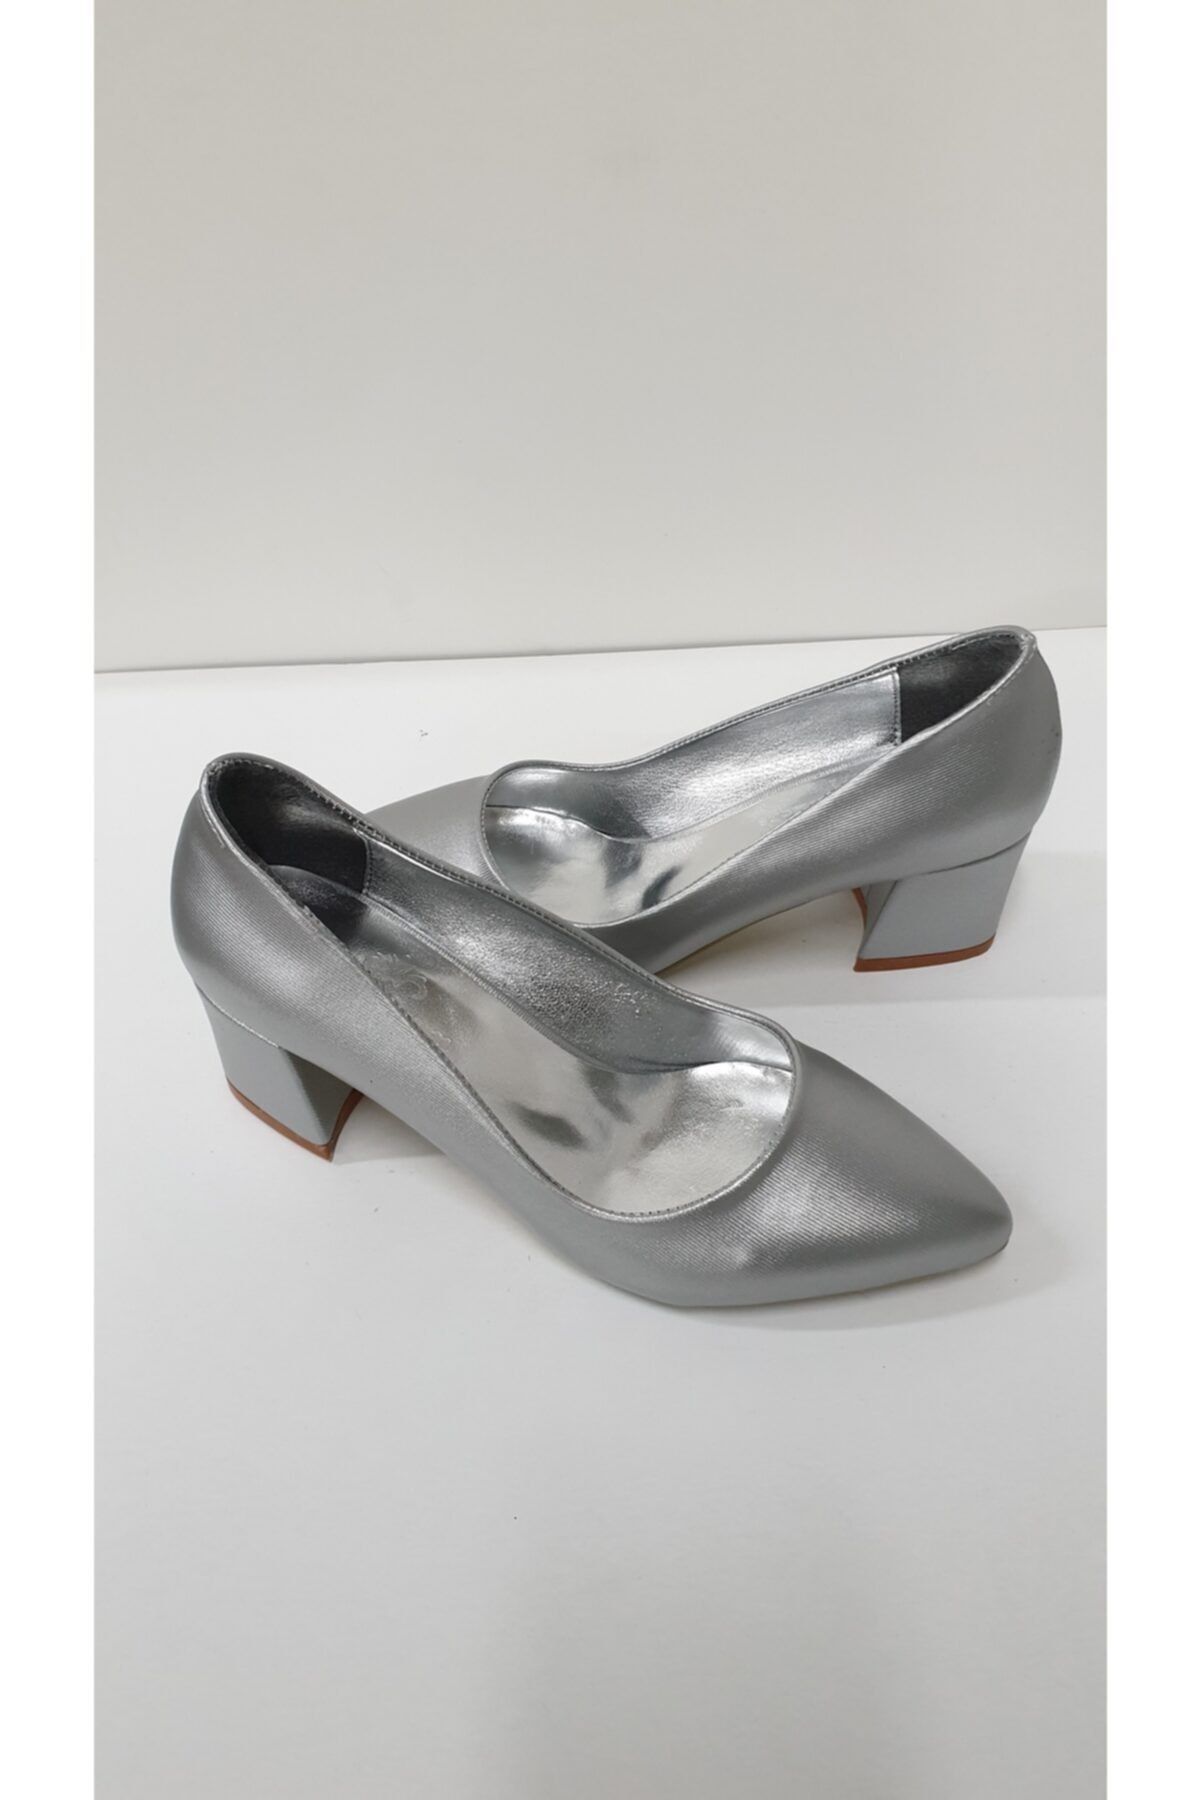 Almera Kadın Gümüş Klasik Topuklu Ayakkabı